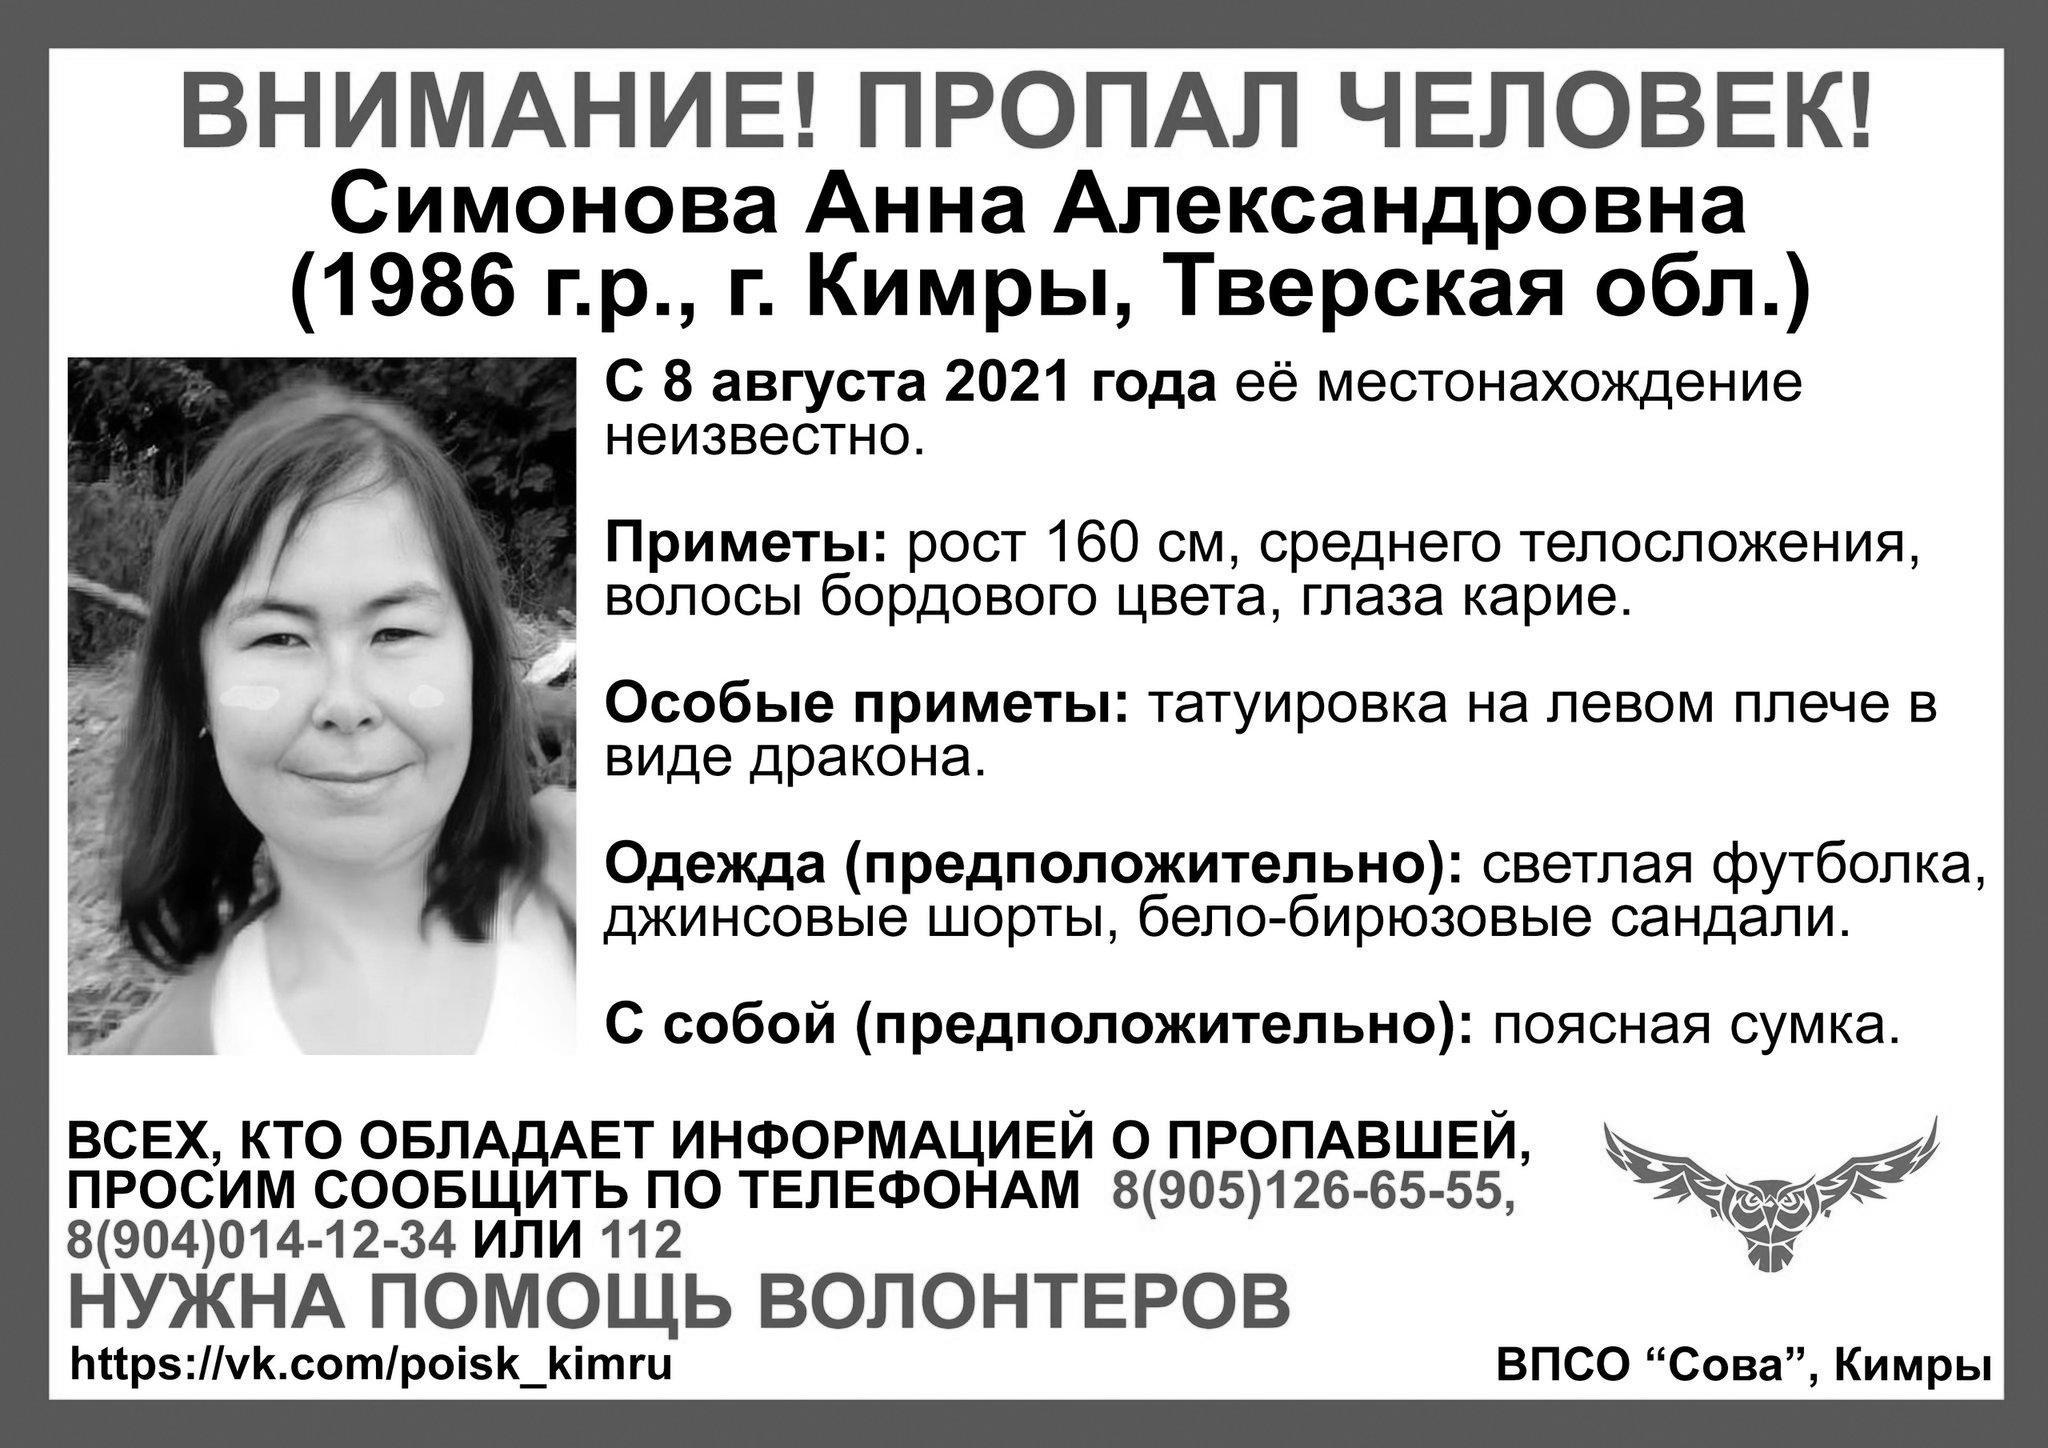 Пропавшая недавно в Тверской области женщина найдена погибшей